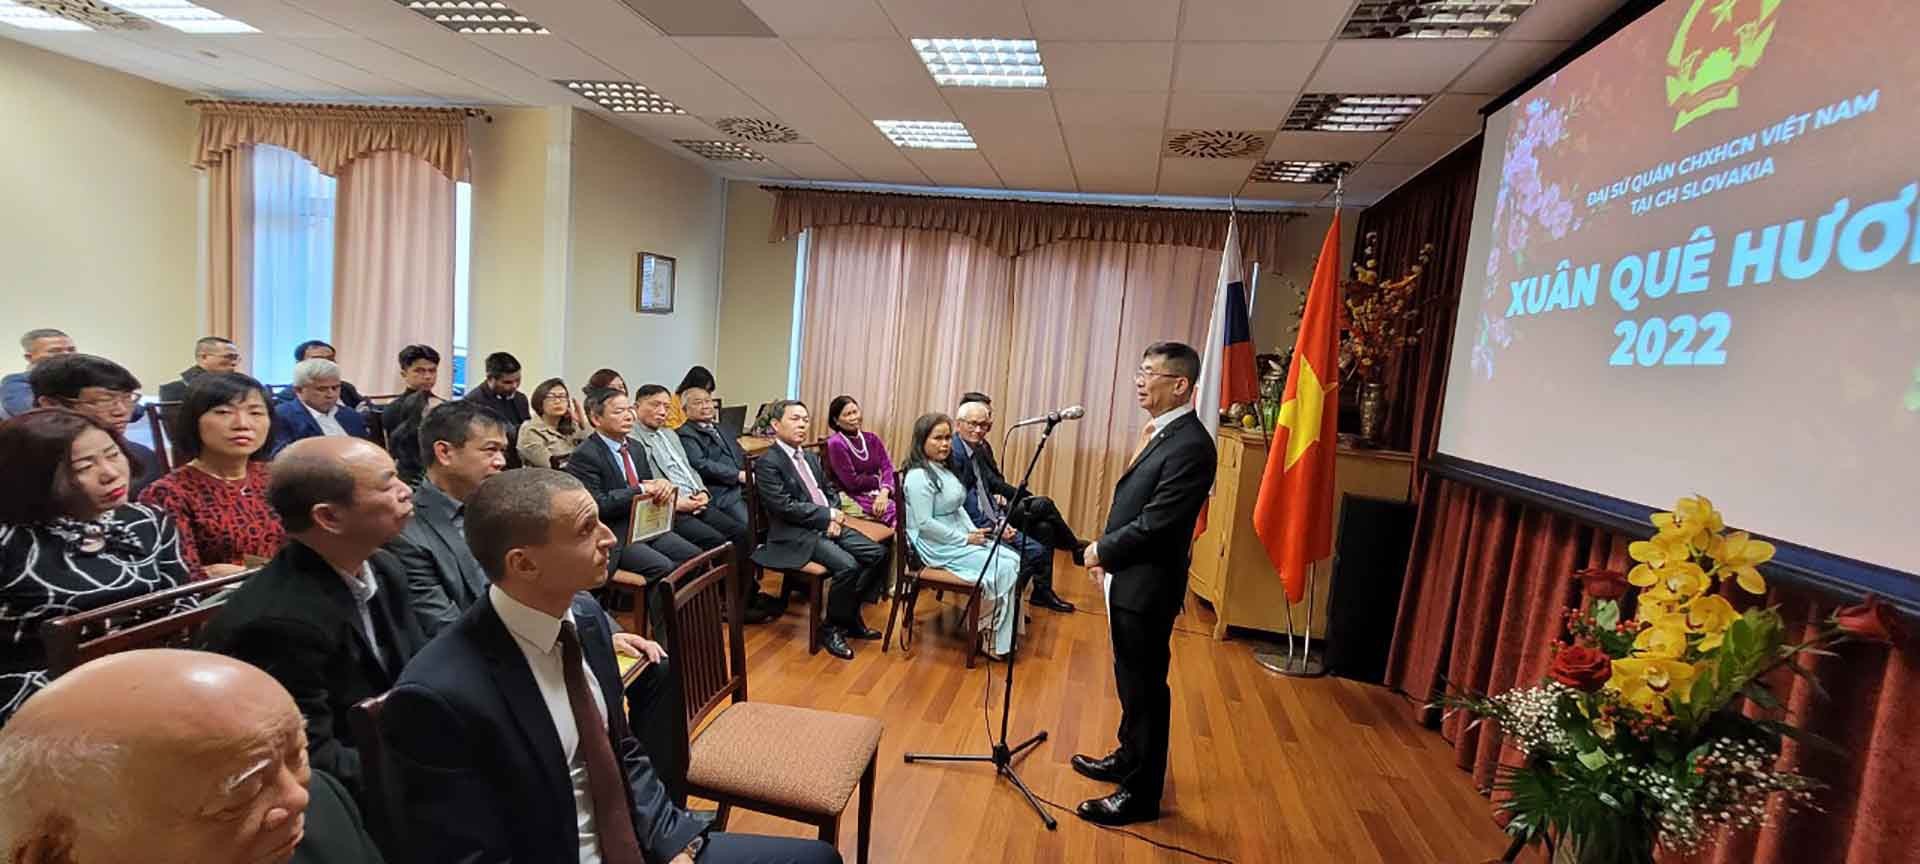 Đại sứ quán Việt Nam đã tổ chức chương trình Xuân Quê hương 2022 chào năm mới Nhâm Dần. 